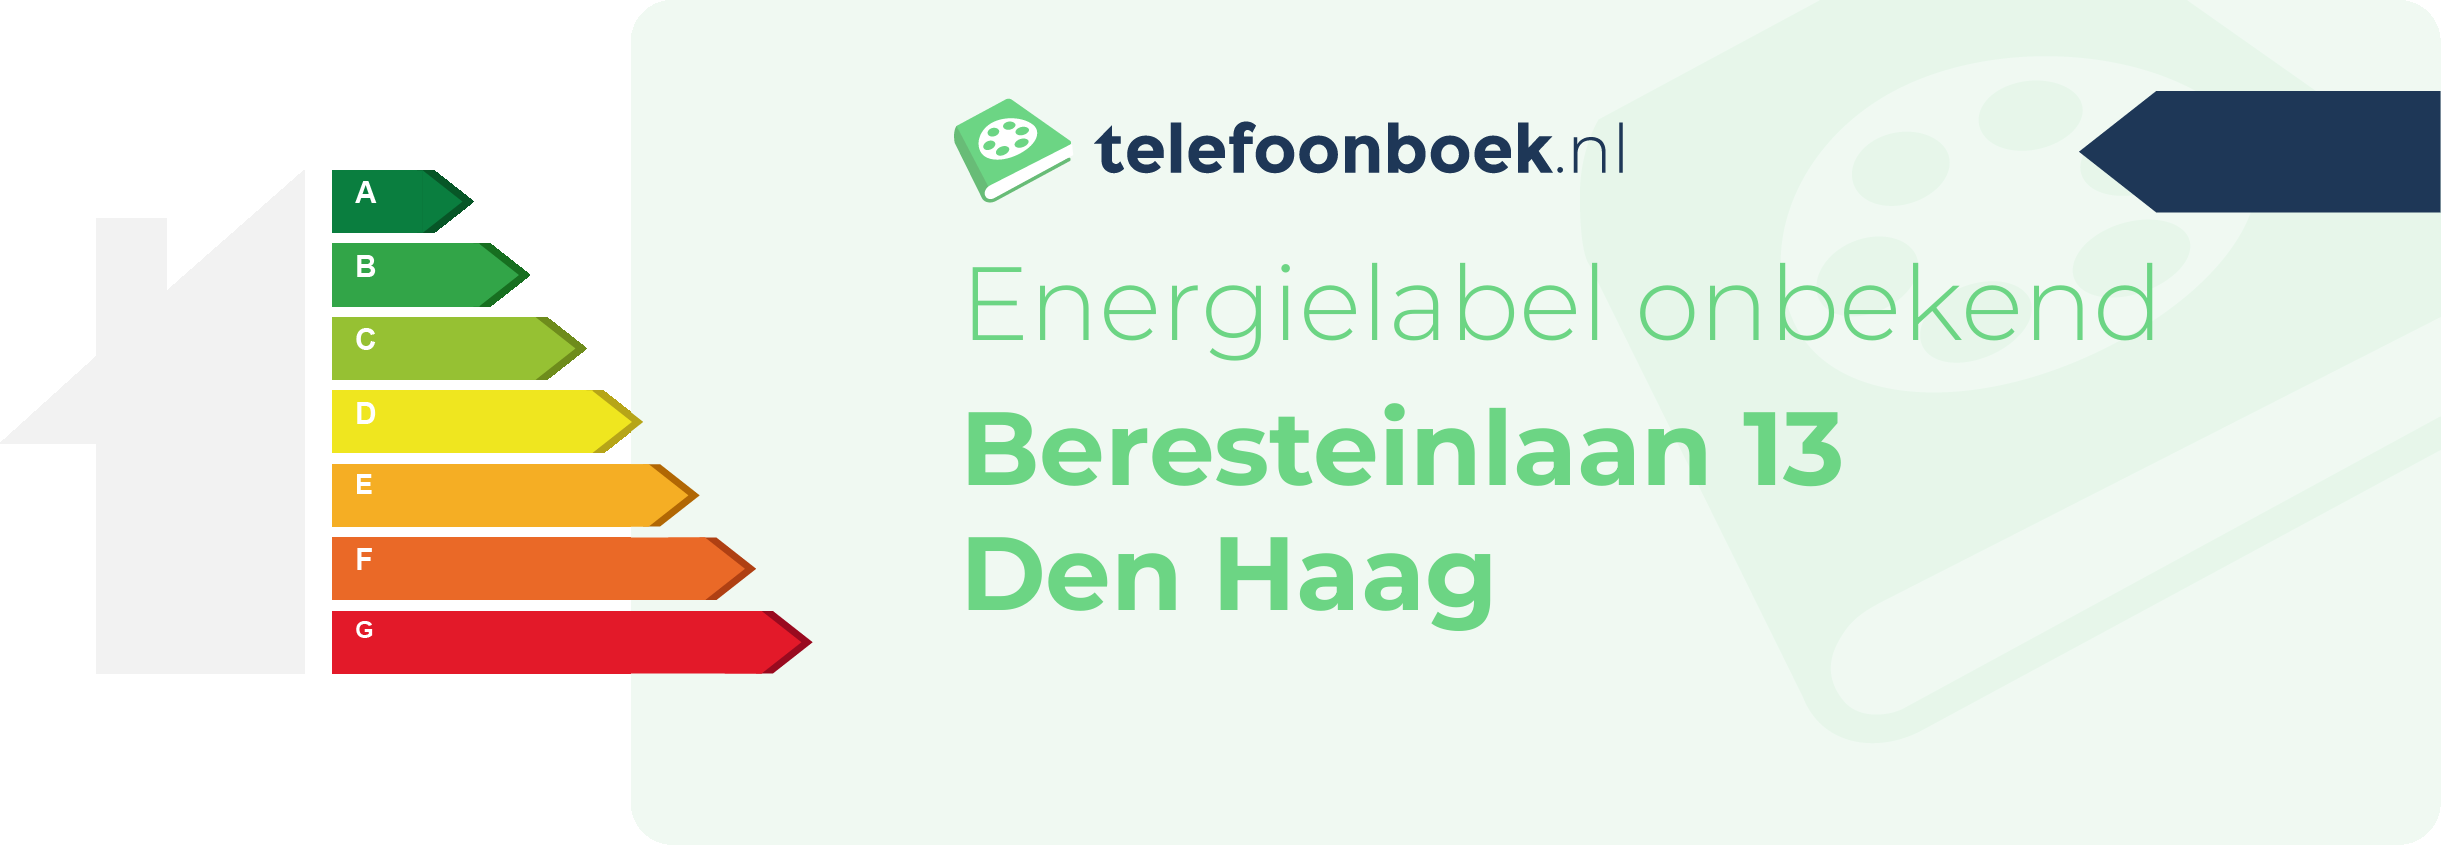 Energielabel Beresteinlaan 13 Den Haag